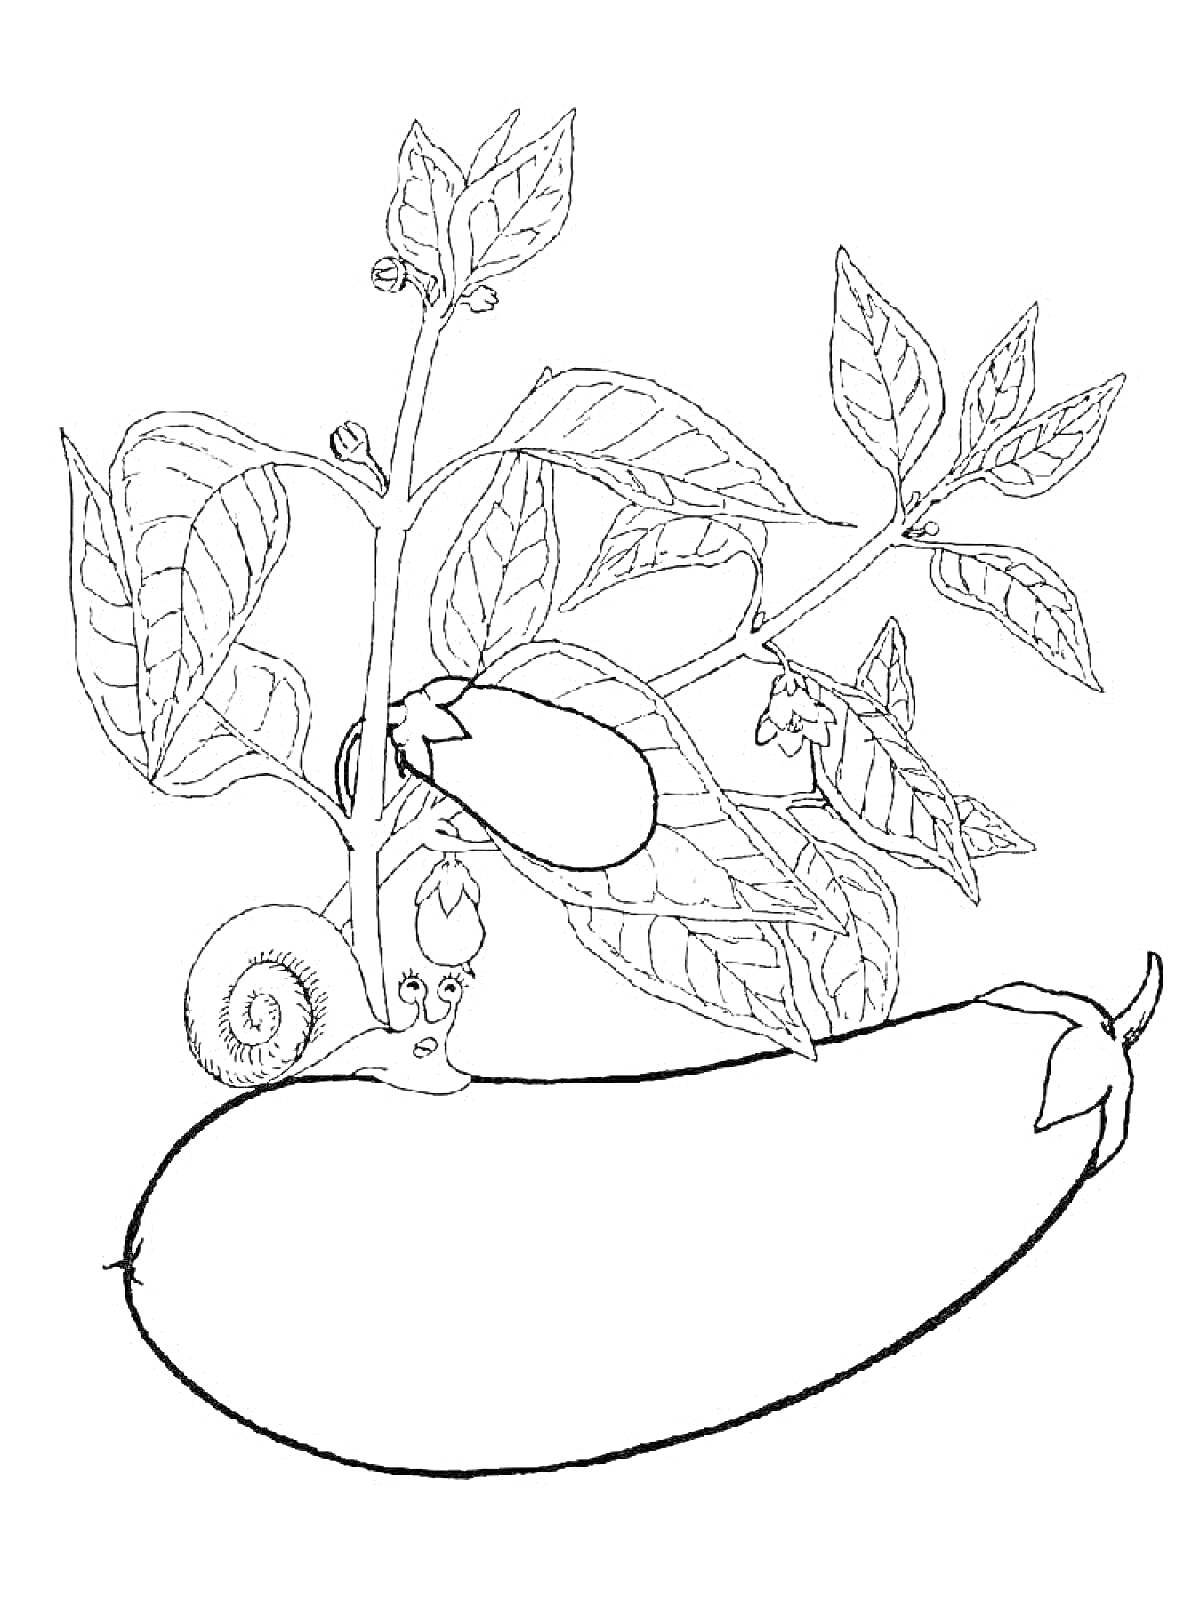 Баклажан с листьями и улиткой на растении